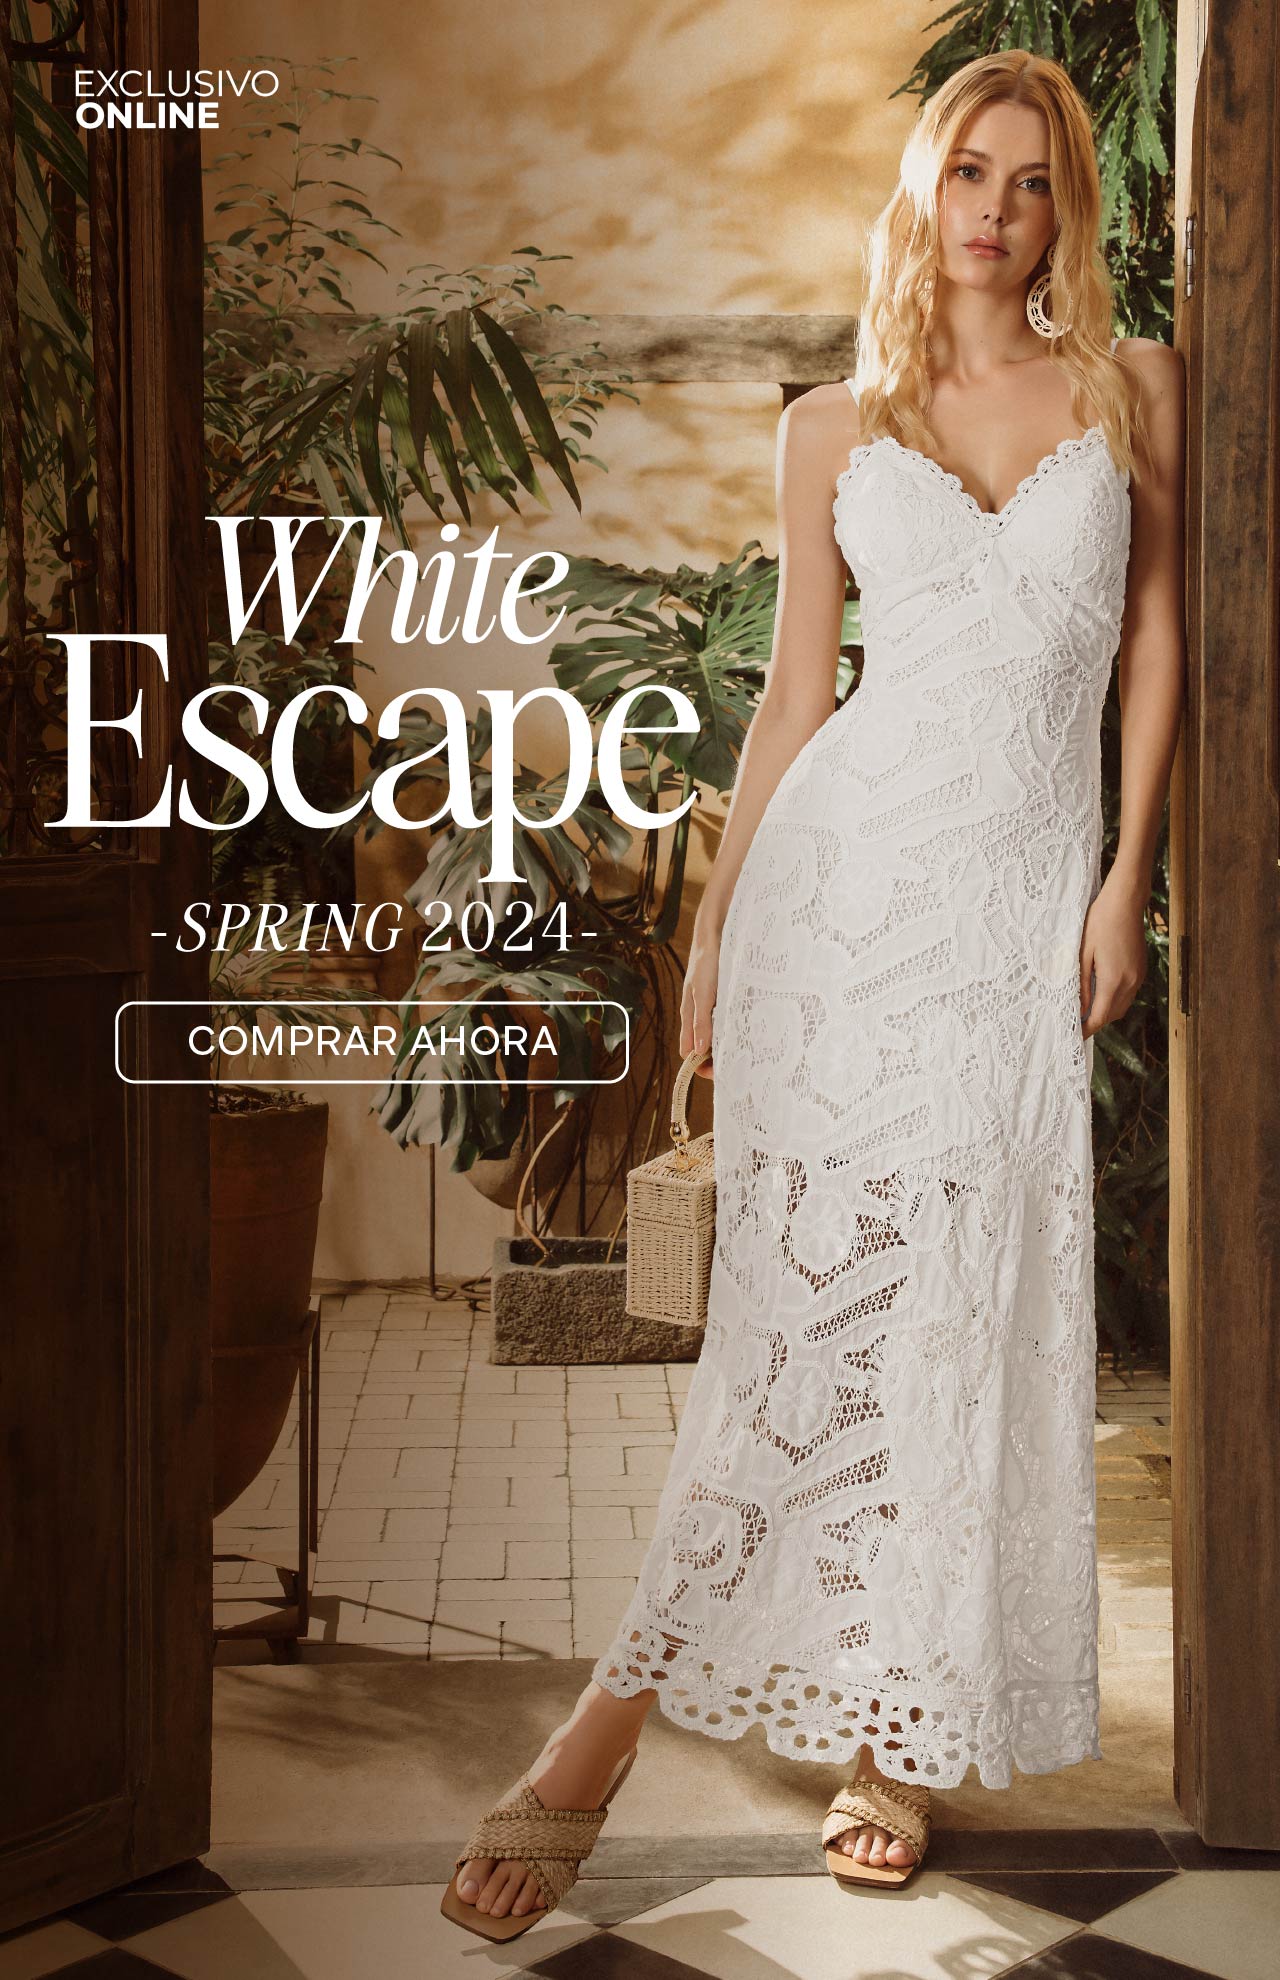 Foto de modelo usando vestido largo en hoja rota blanca 